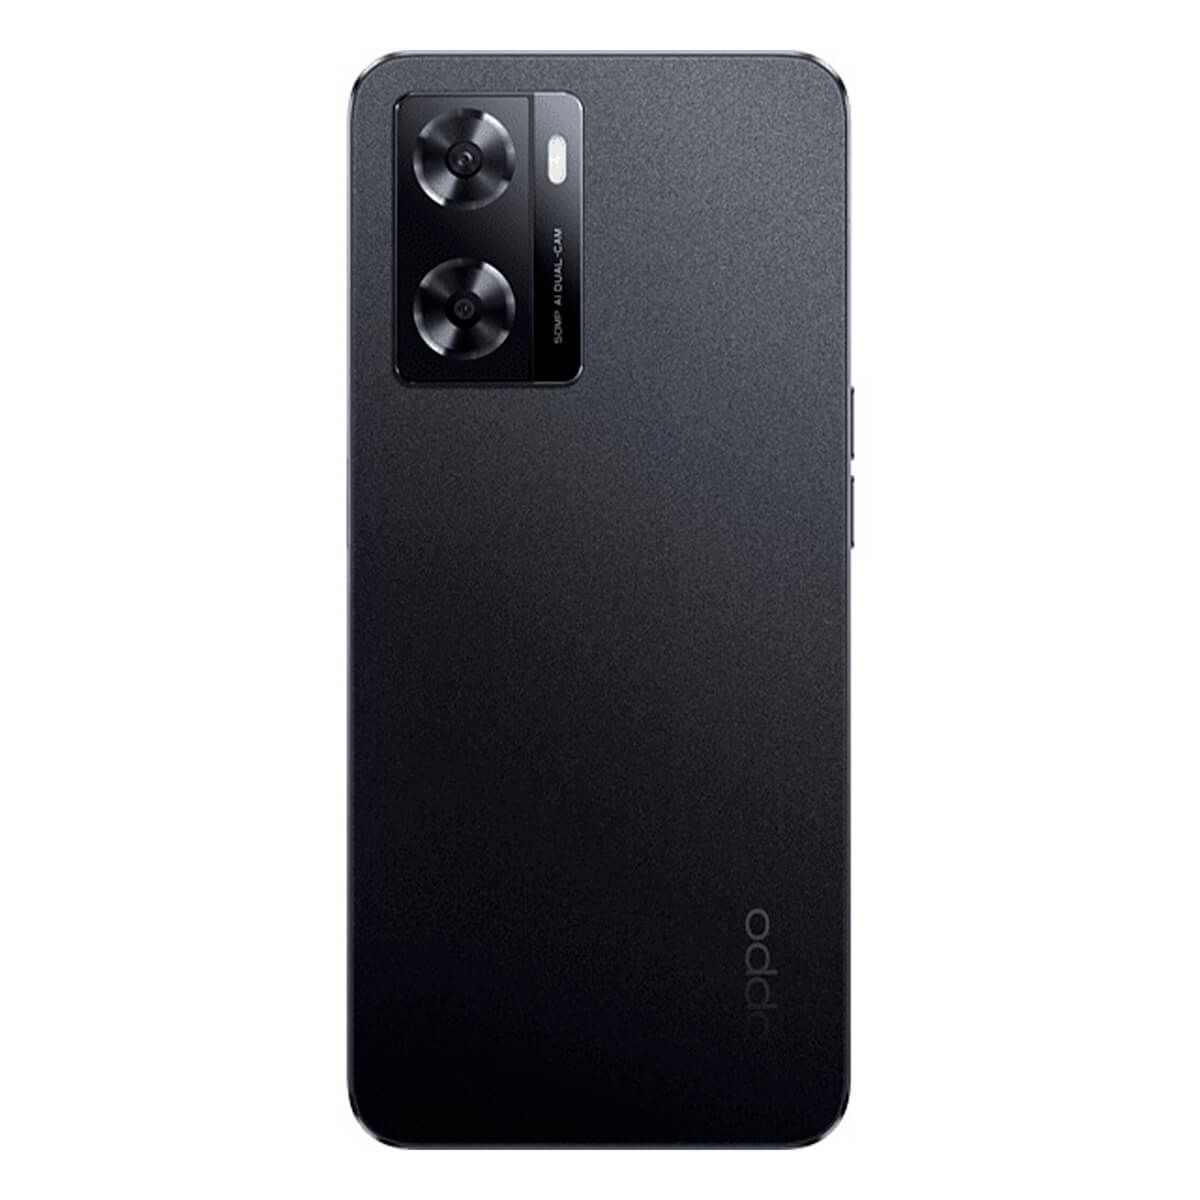 OPPO A57s 4GB/128GB Black (Starry Black) Dual SIM